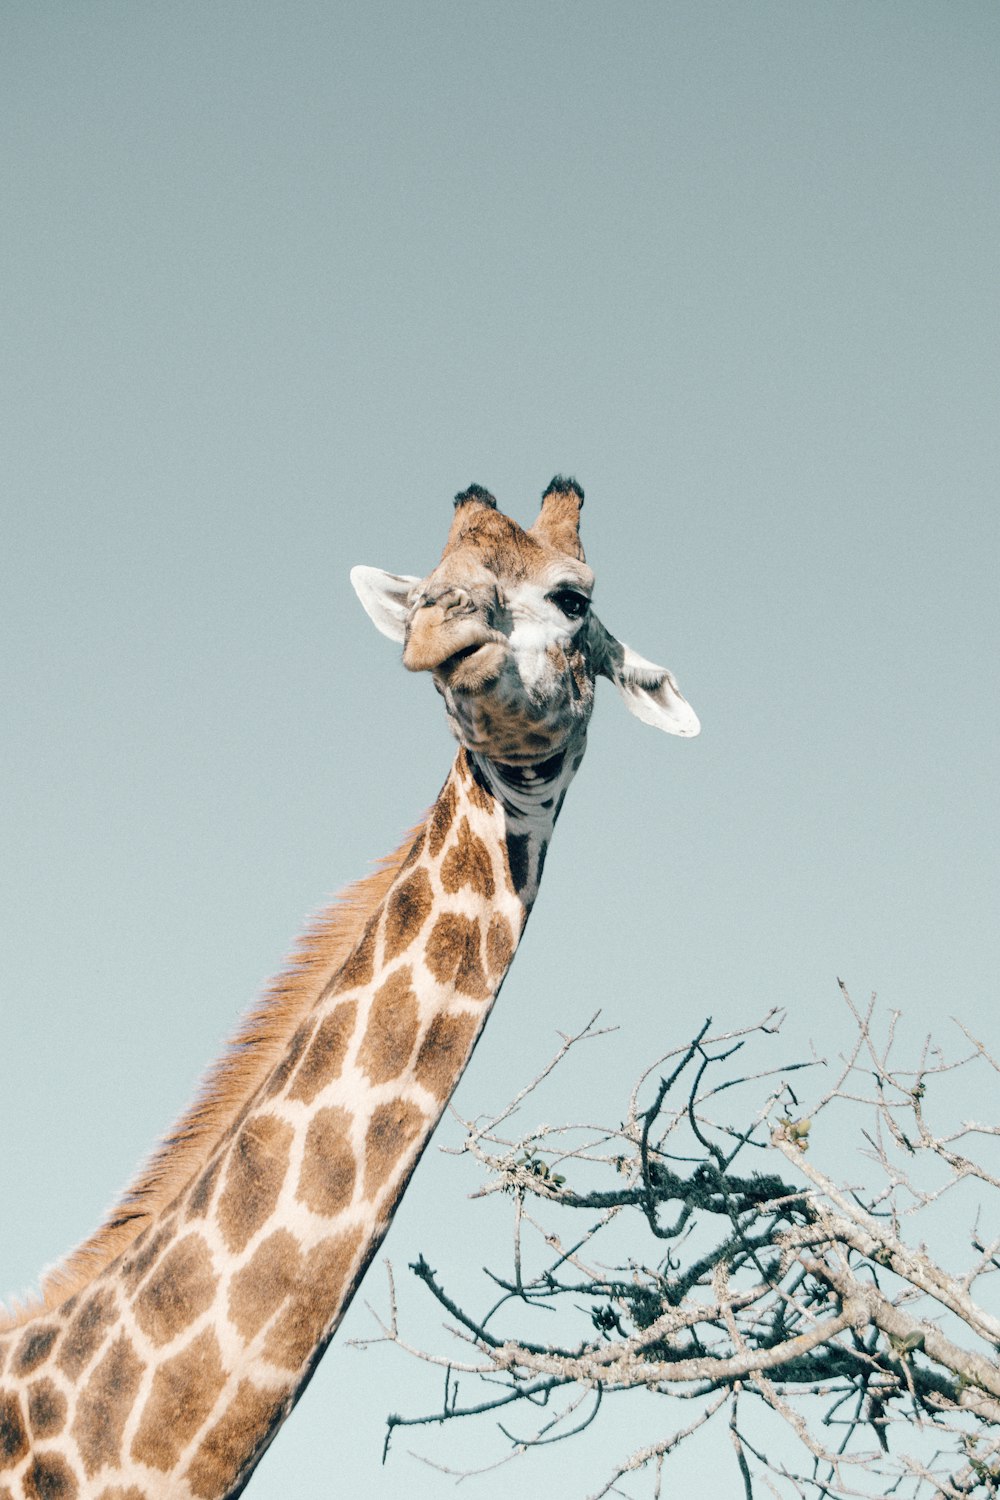 low-angle photo of giraffe